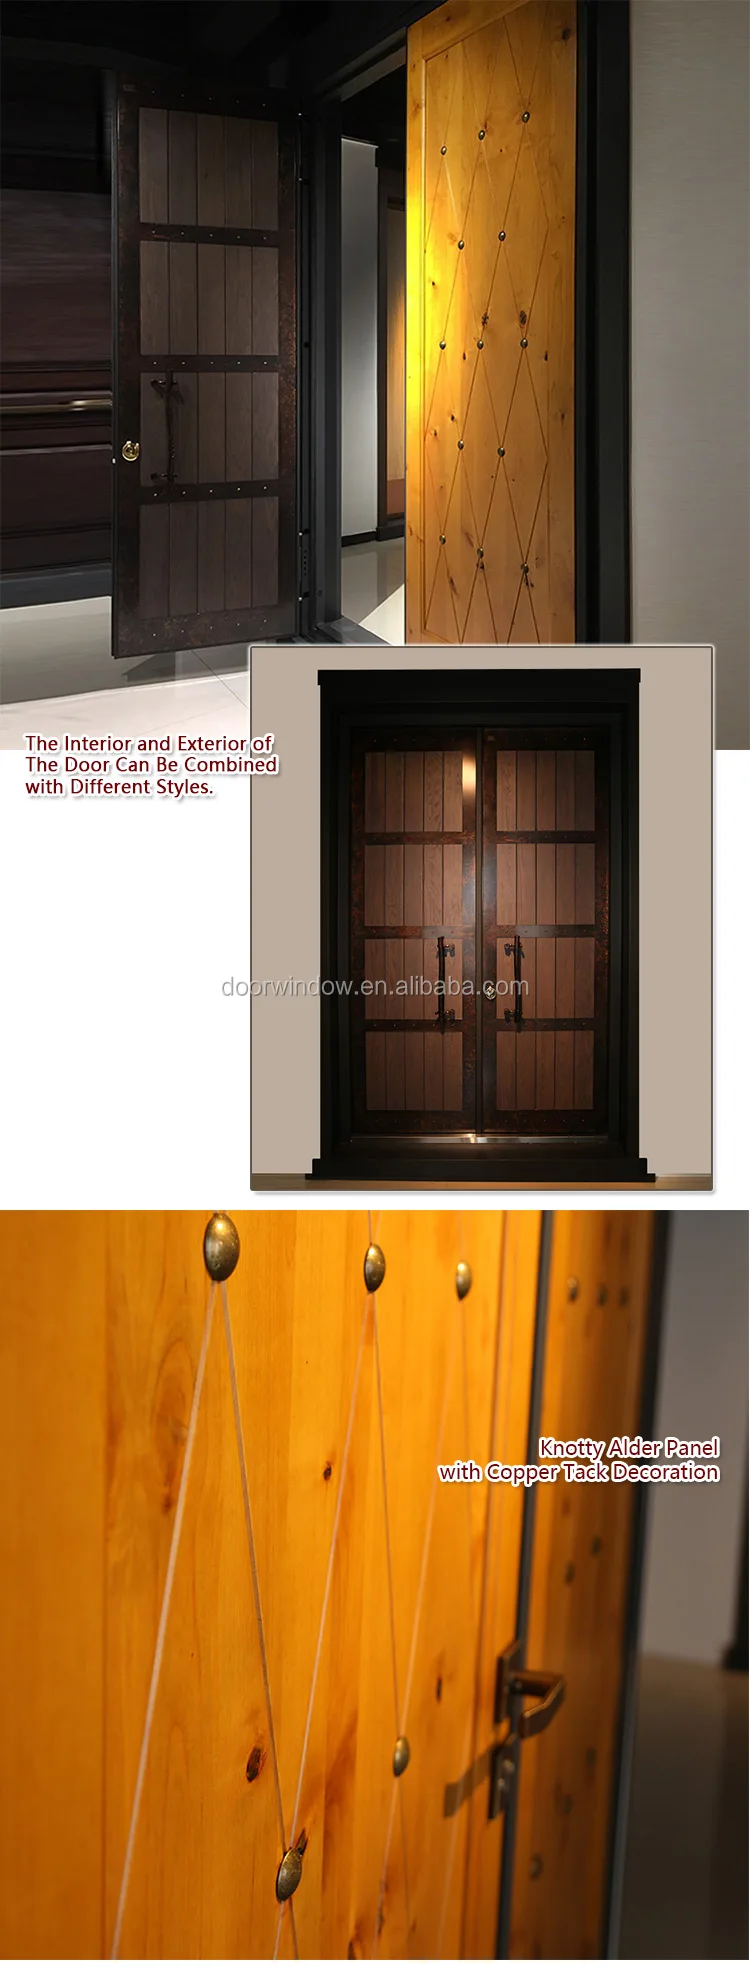 security doors homes exterior panel door design knotty alder wood door with copper tack decoration steel framed